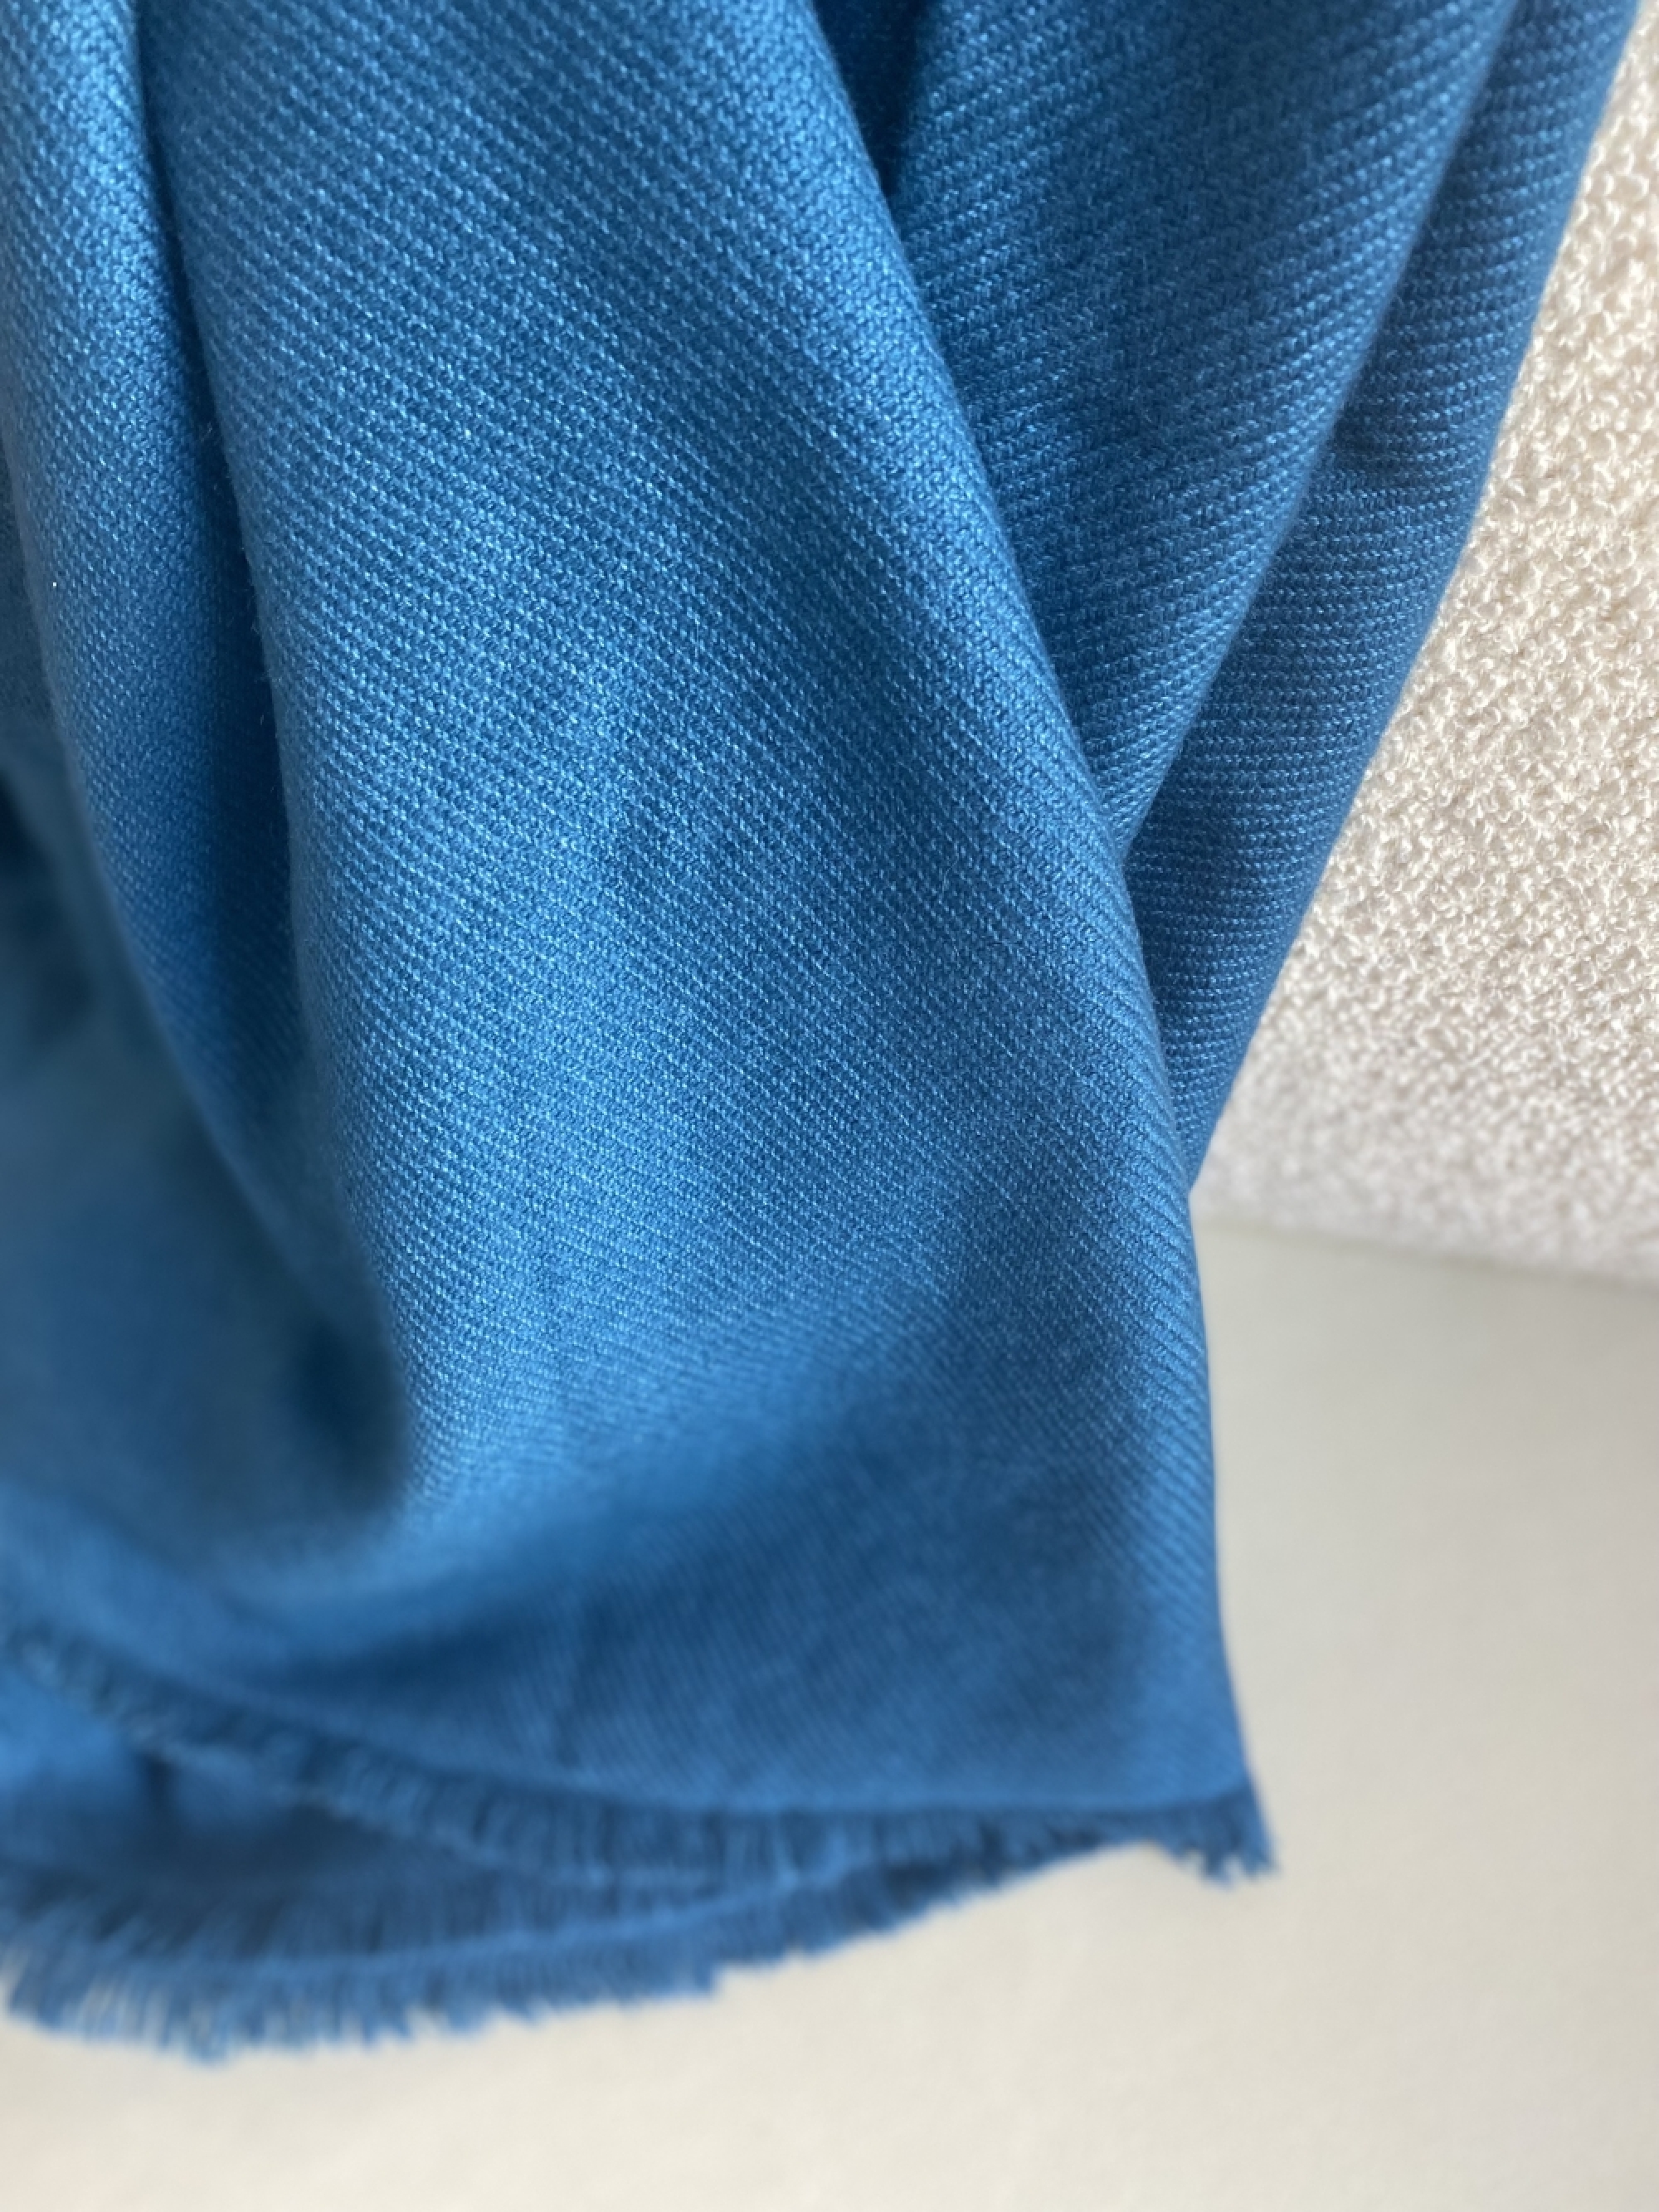 Cachemire accessoires couvertures plaids toodoo plain l 220 x 220 bleu canard 220x220cm